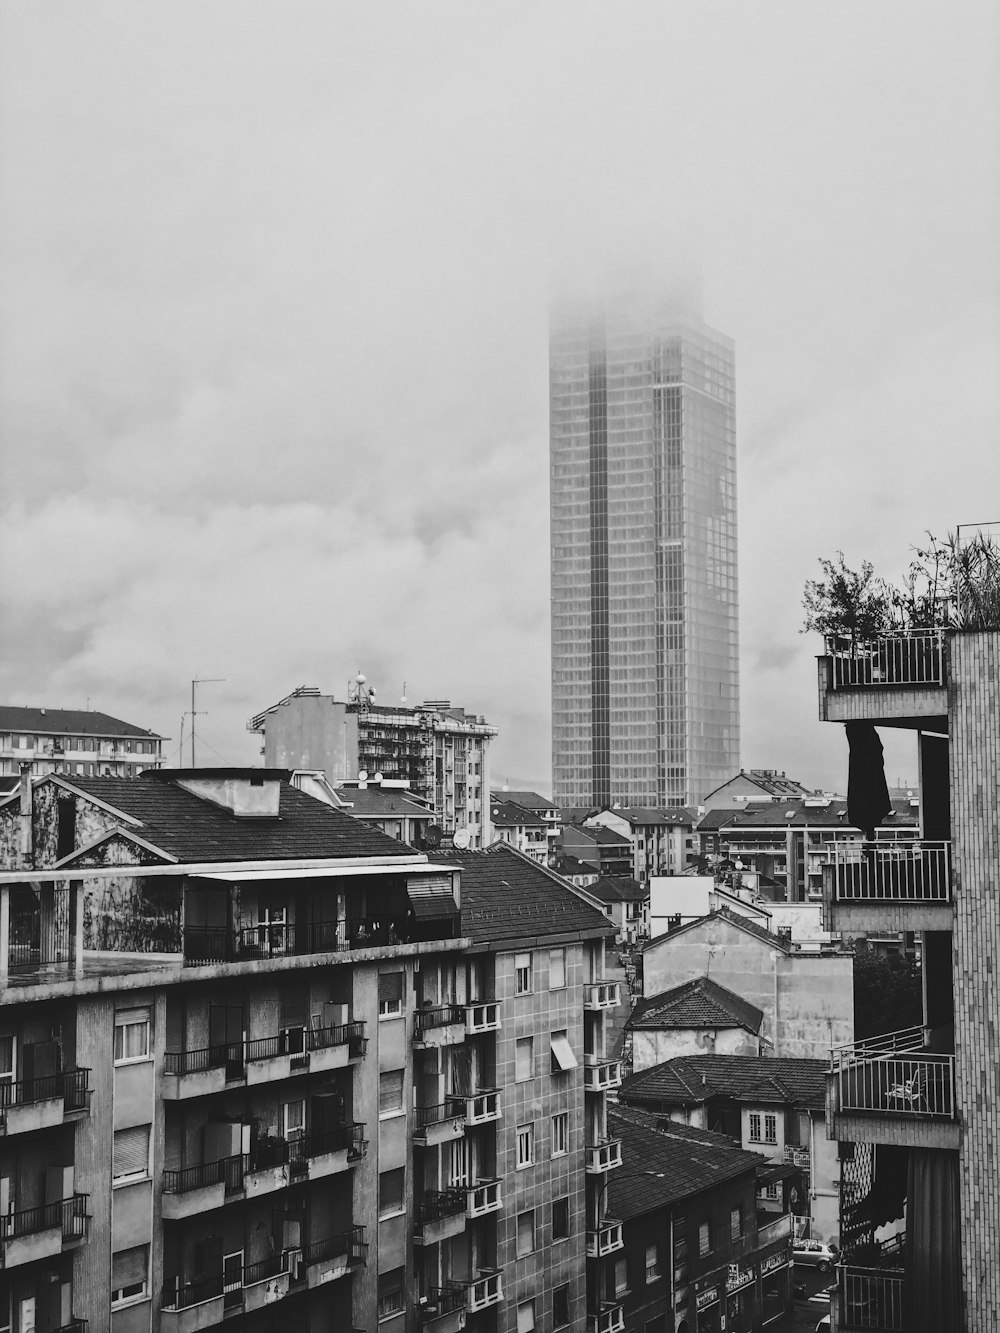 fotografia in scala di grigi della città con grattacieli e case